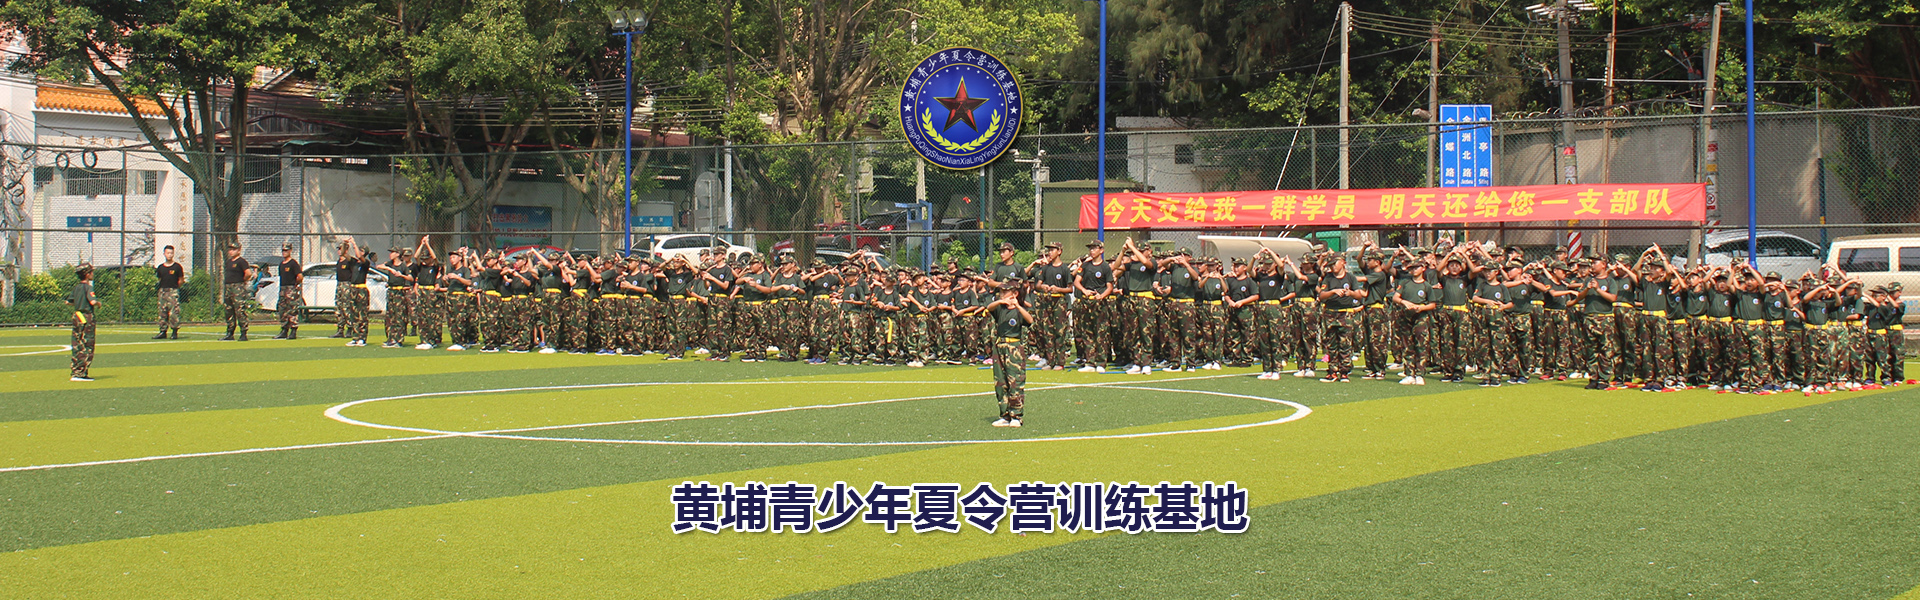 广州兵种训练基地图片